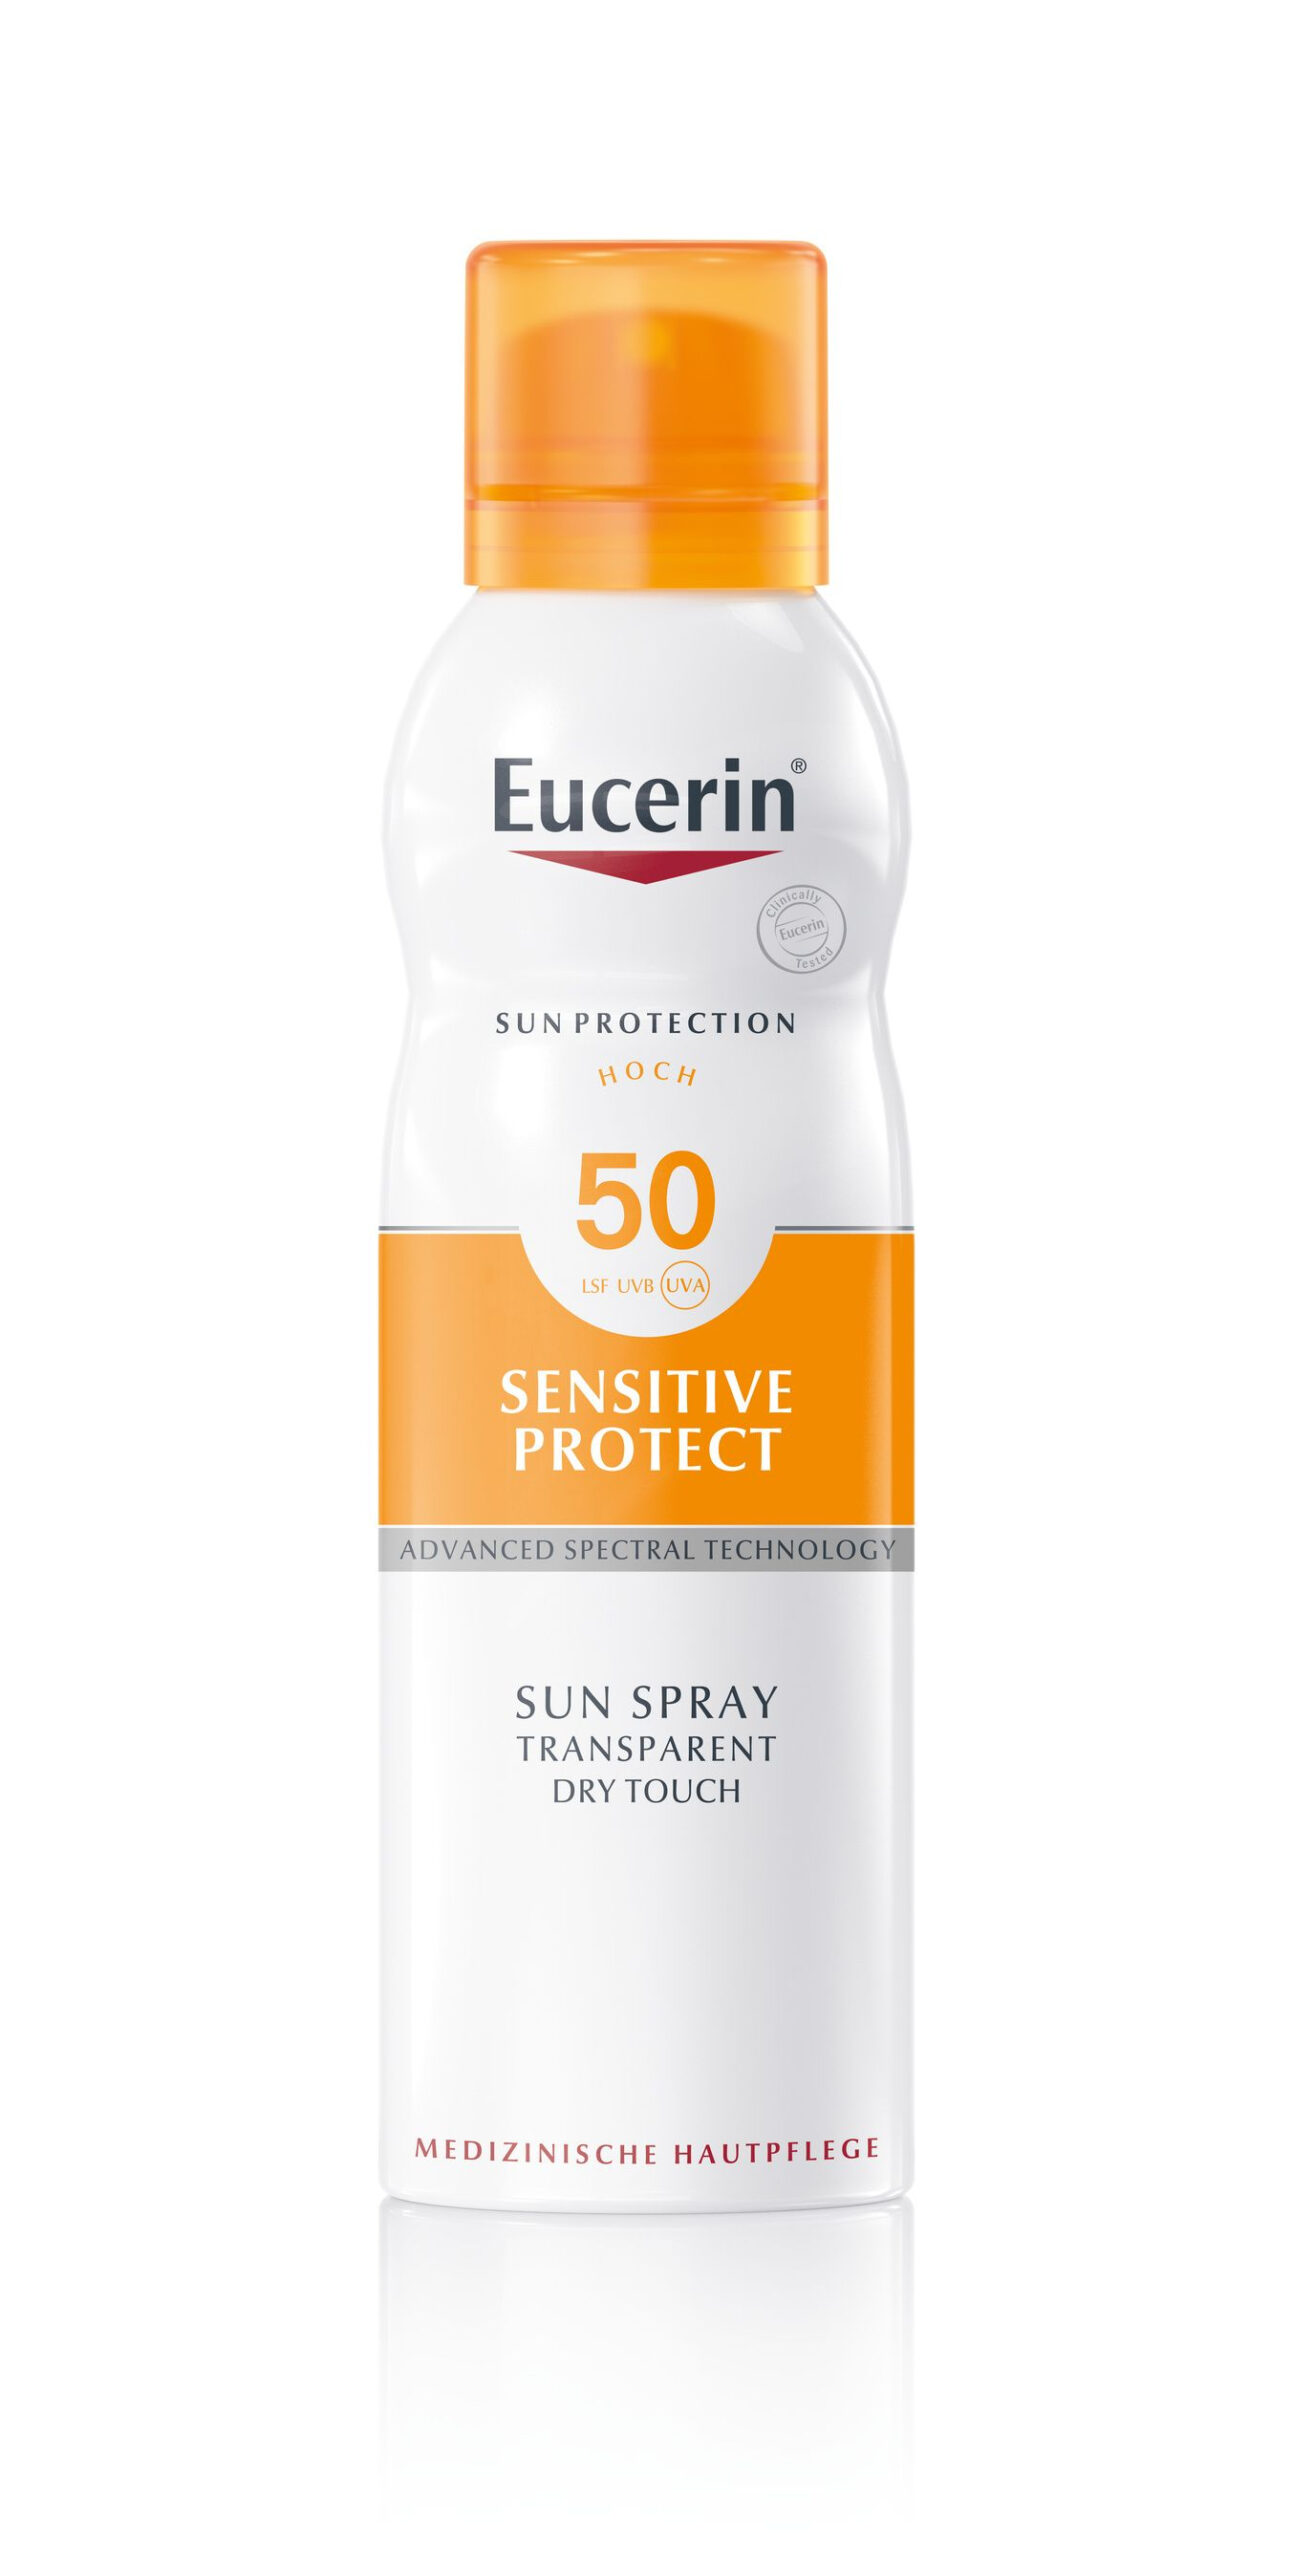 Eucerin Sensitive Protect Dry Touch SPF50 transparentní sprej 200 ml Eucerin